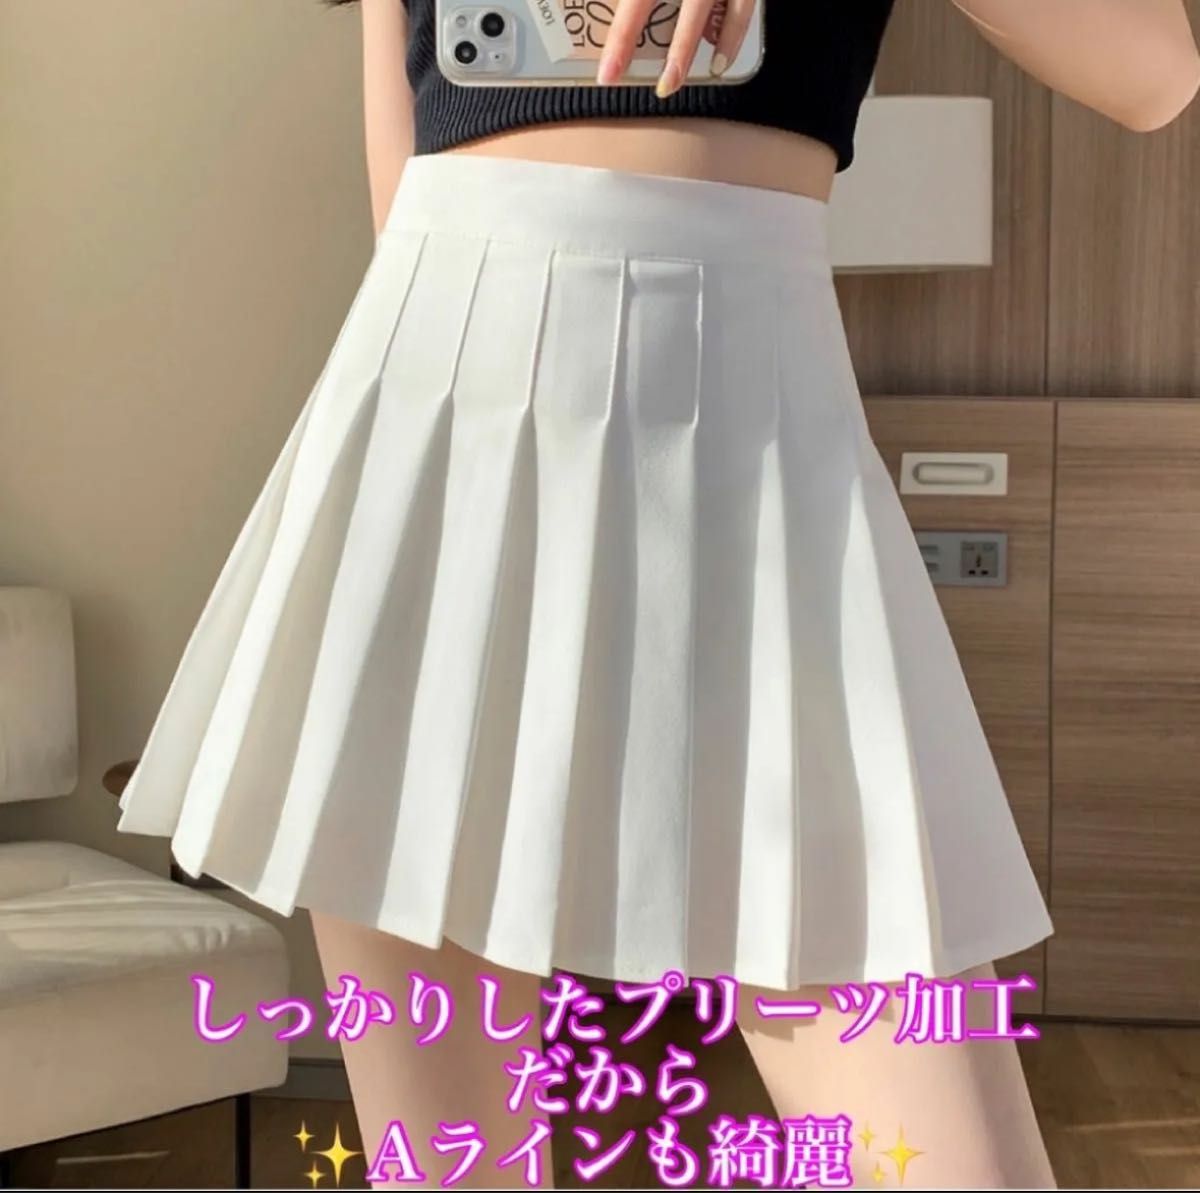 ミニスカ スカート プリーツスカート 韓国ファッション 美脚 ダンス衣装 制服